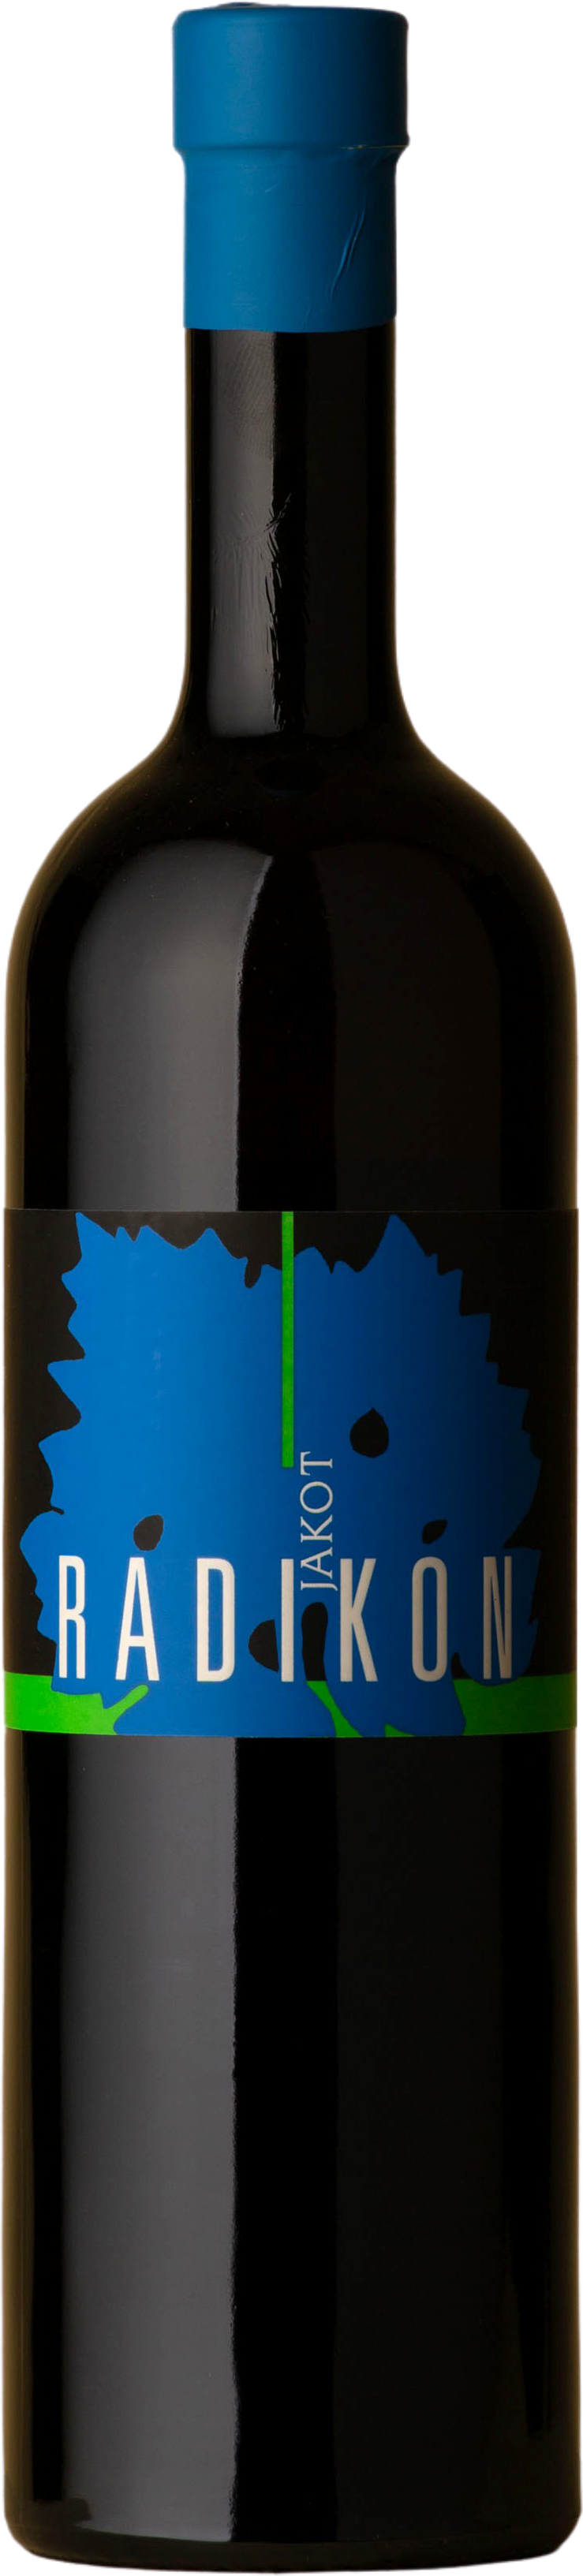 Radikon - Jakot 500mL Friulano 2015 Orange Wine